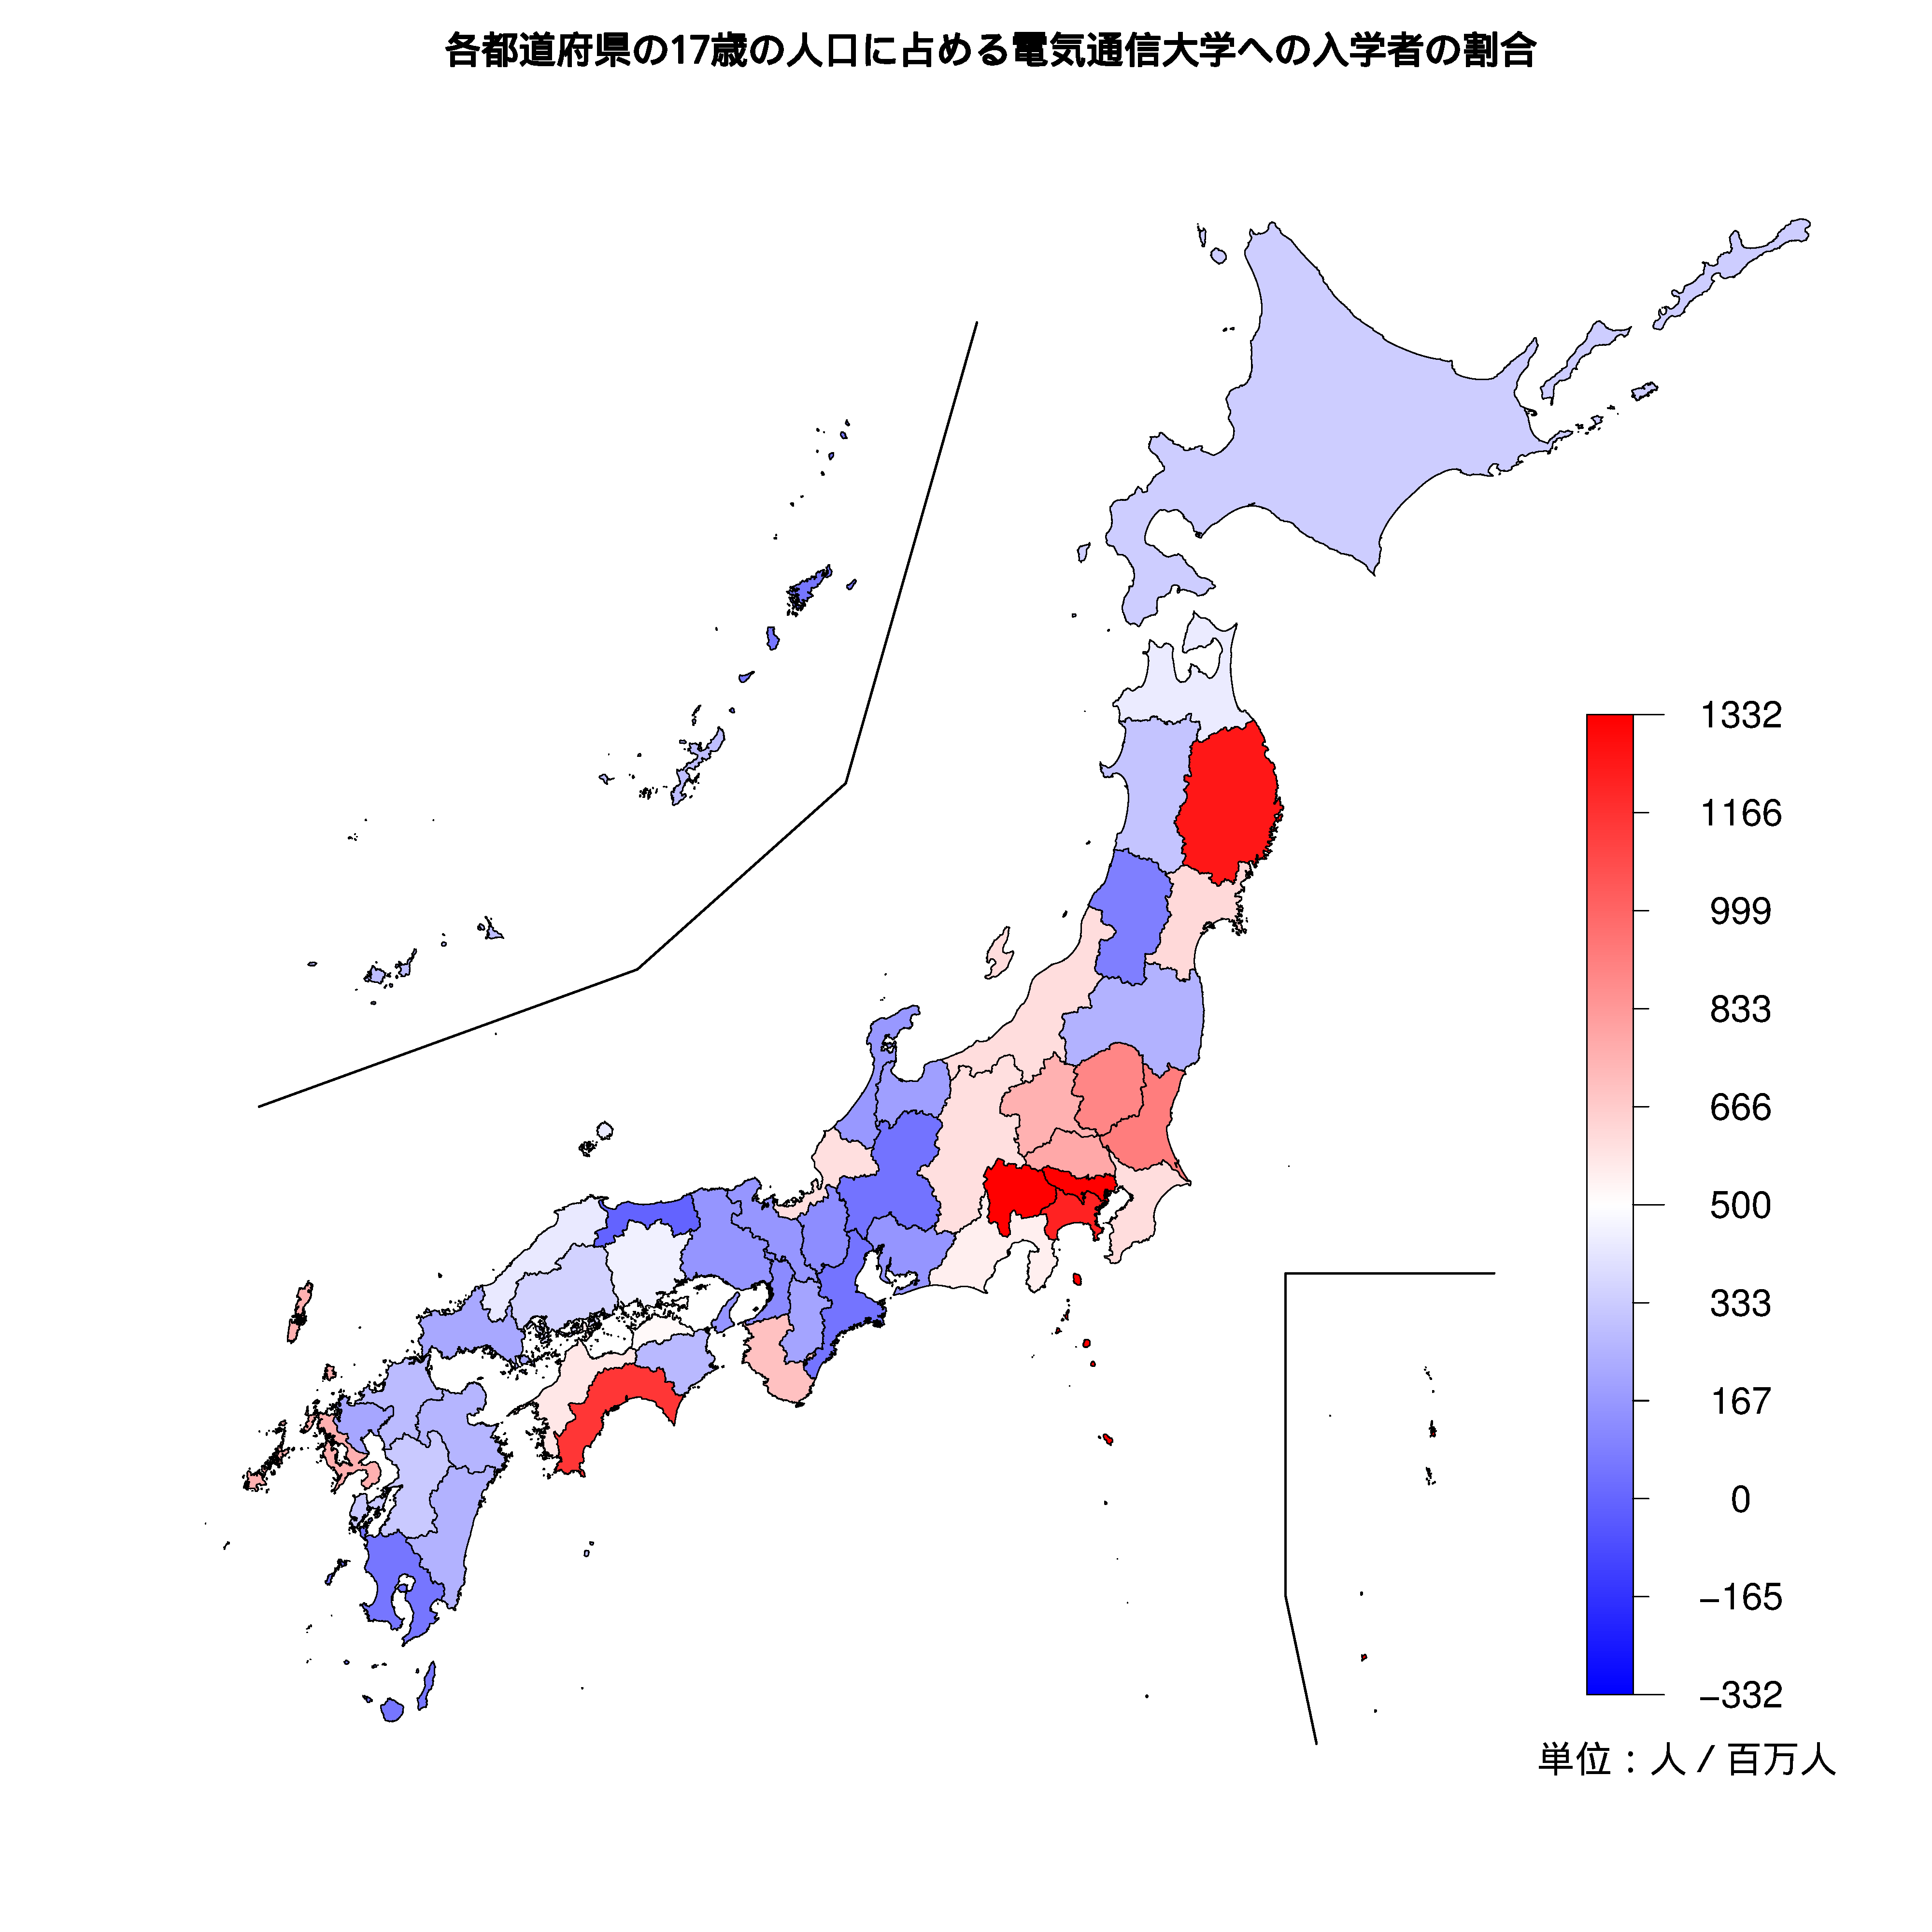 電気通信大学への入学者が多い都道府県の色分け地図